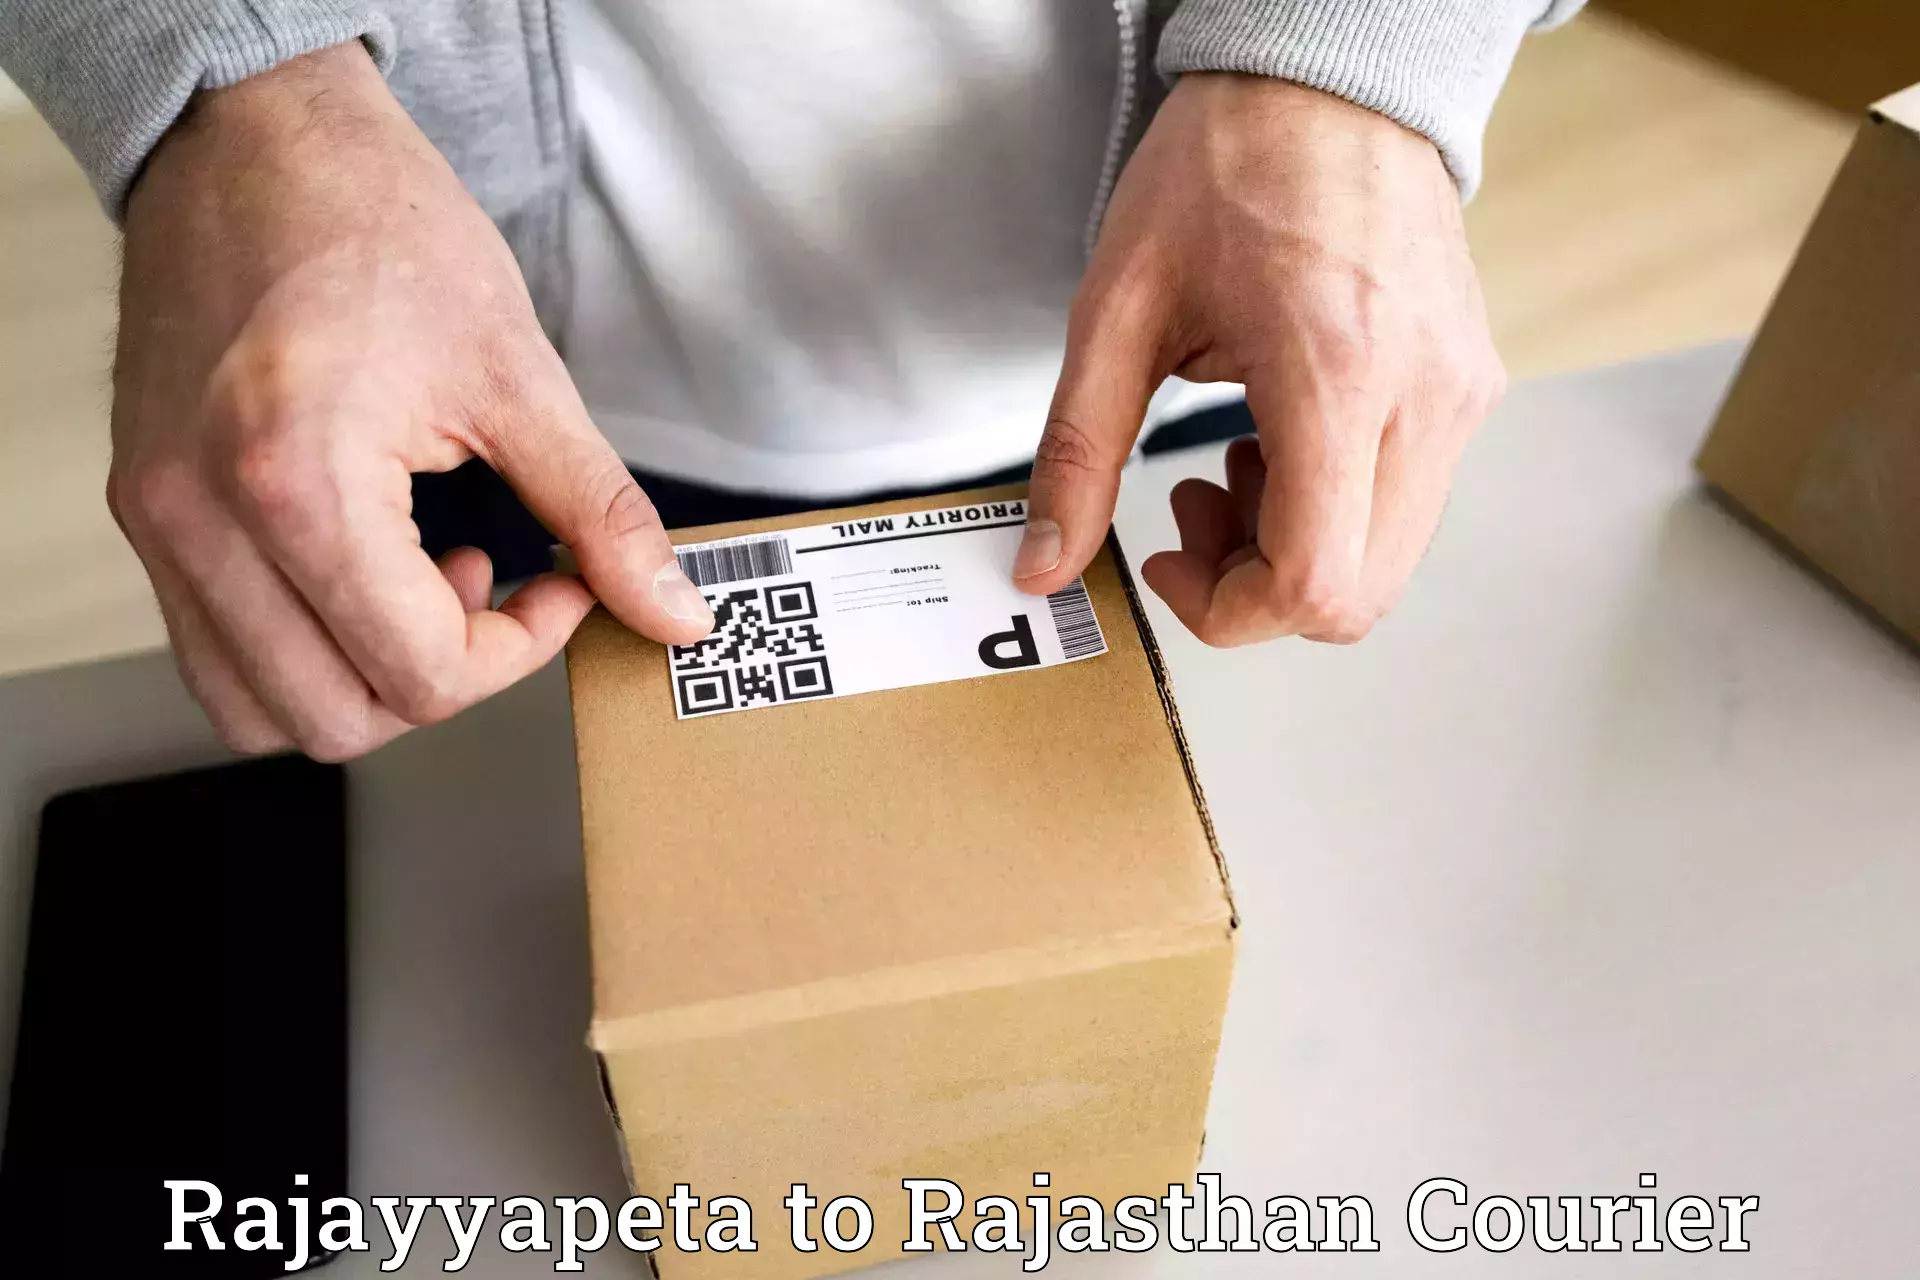 Seamless shipping service Rajayyapeta to Rajasthan